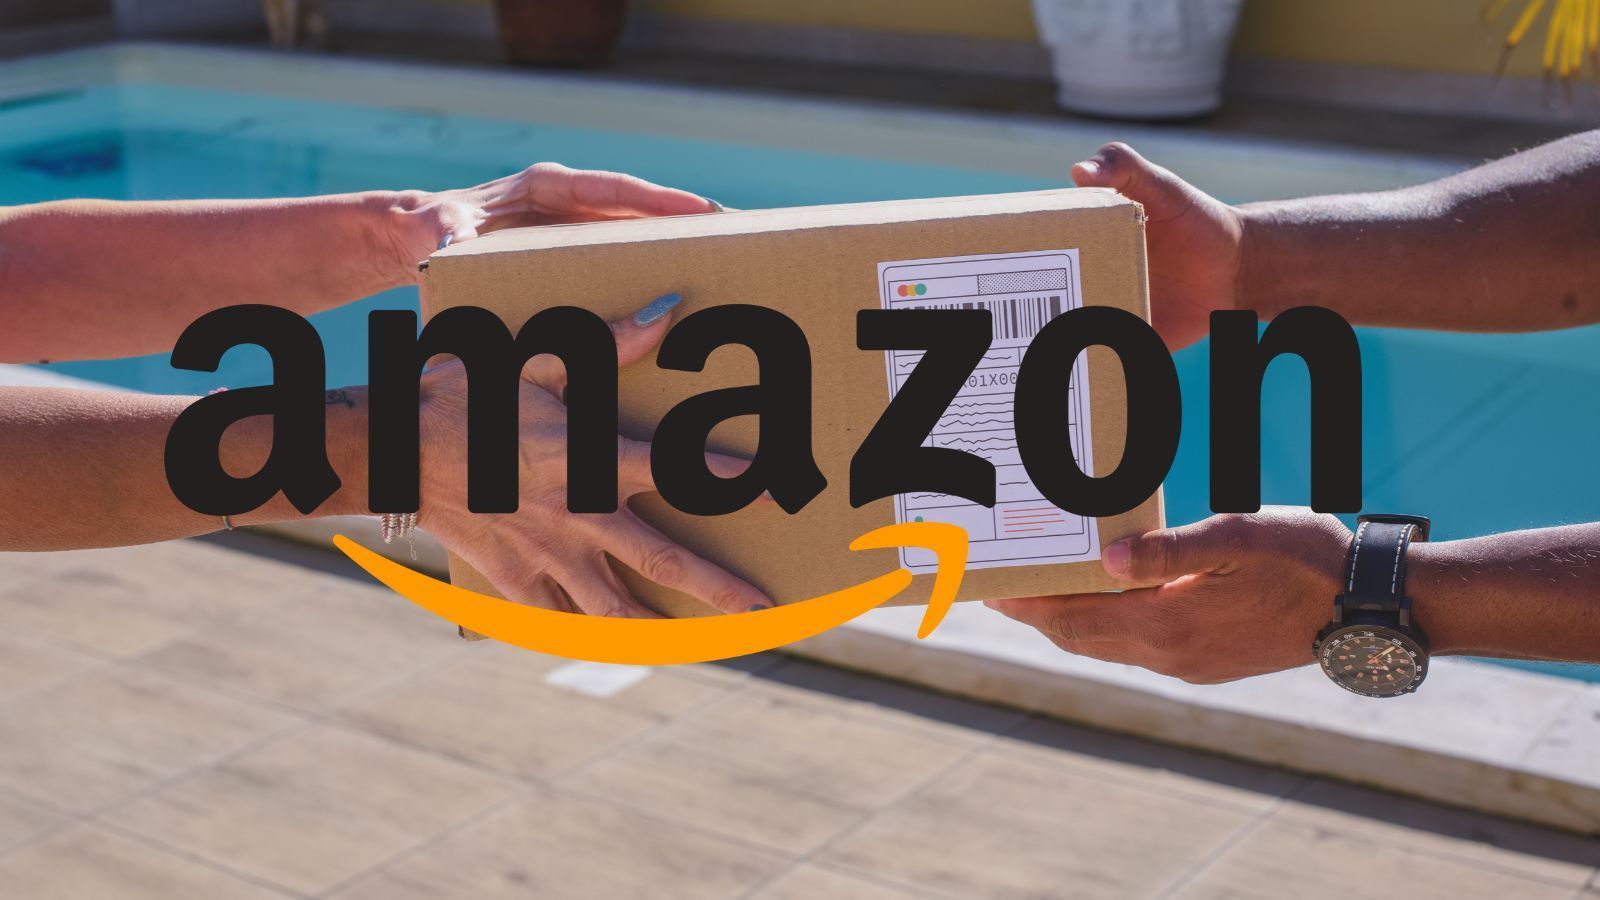 Amazon, FOLLIA di Settembre con smartphone e prodotti in REGALO